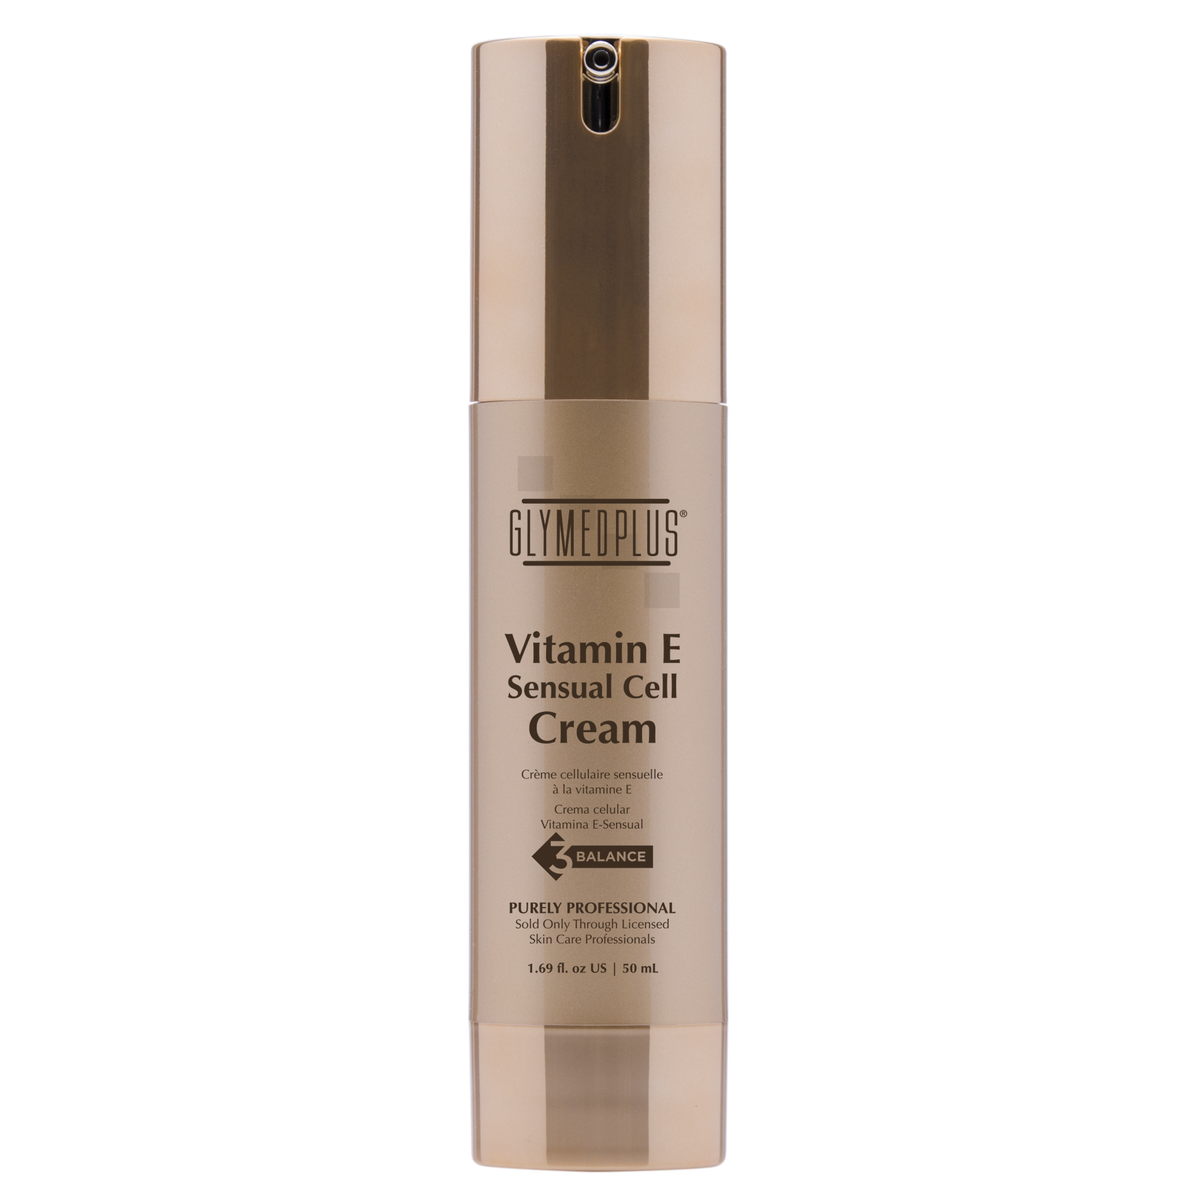 Vitamin E Sensual Cell Cream